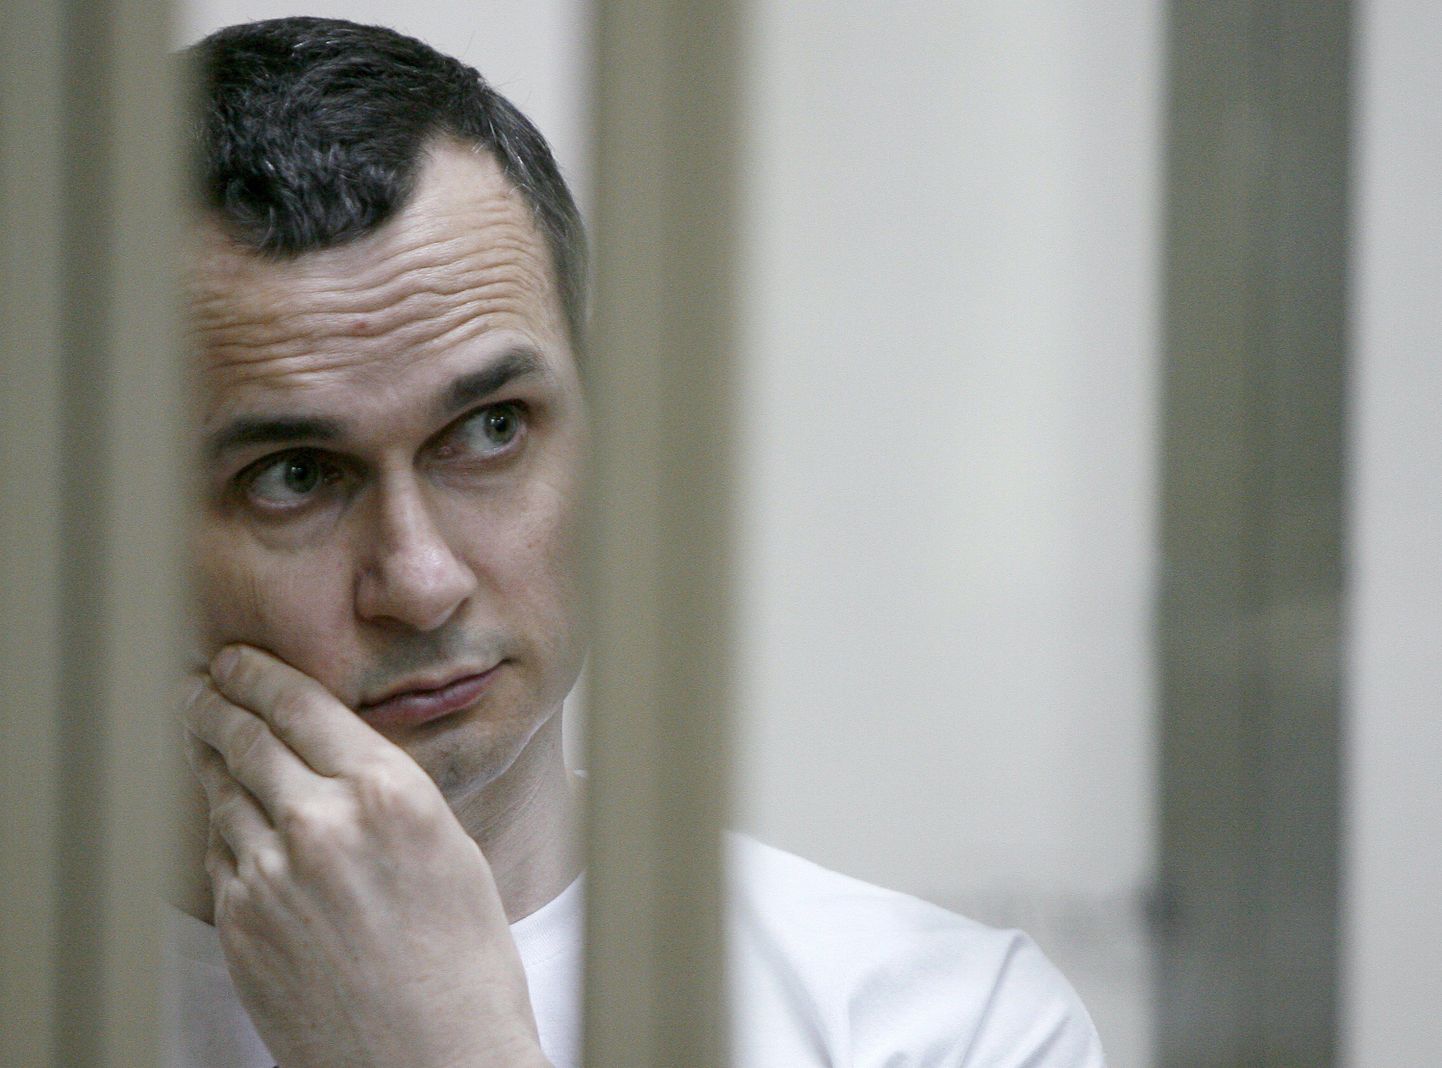 Ukraina filmirežissöör Oleg Sentsov Doni-ääreses Rostovis kohtusaalis.